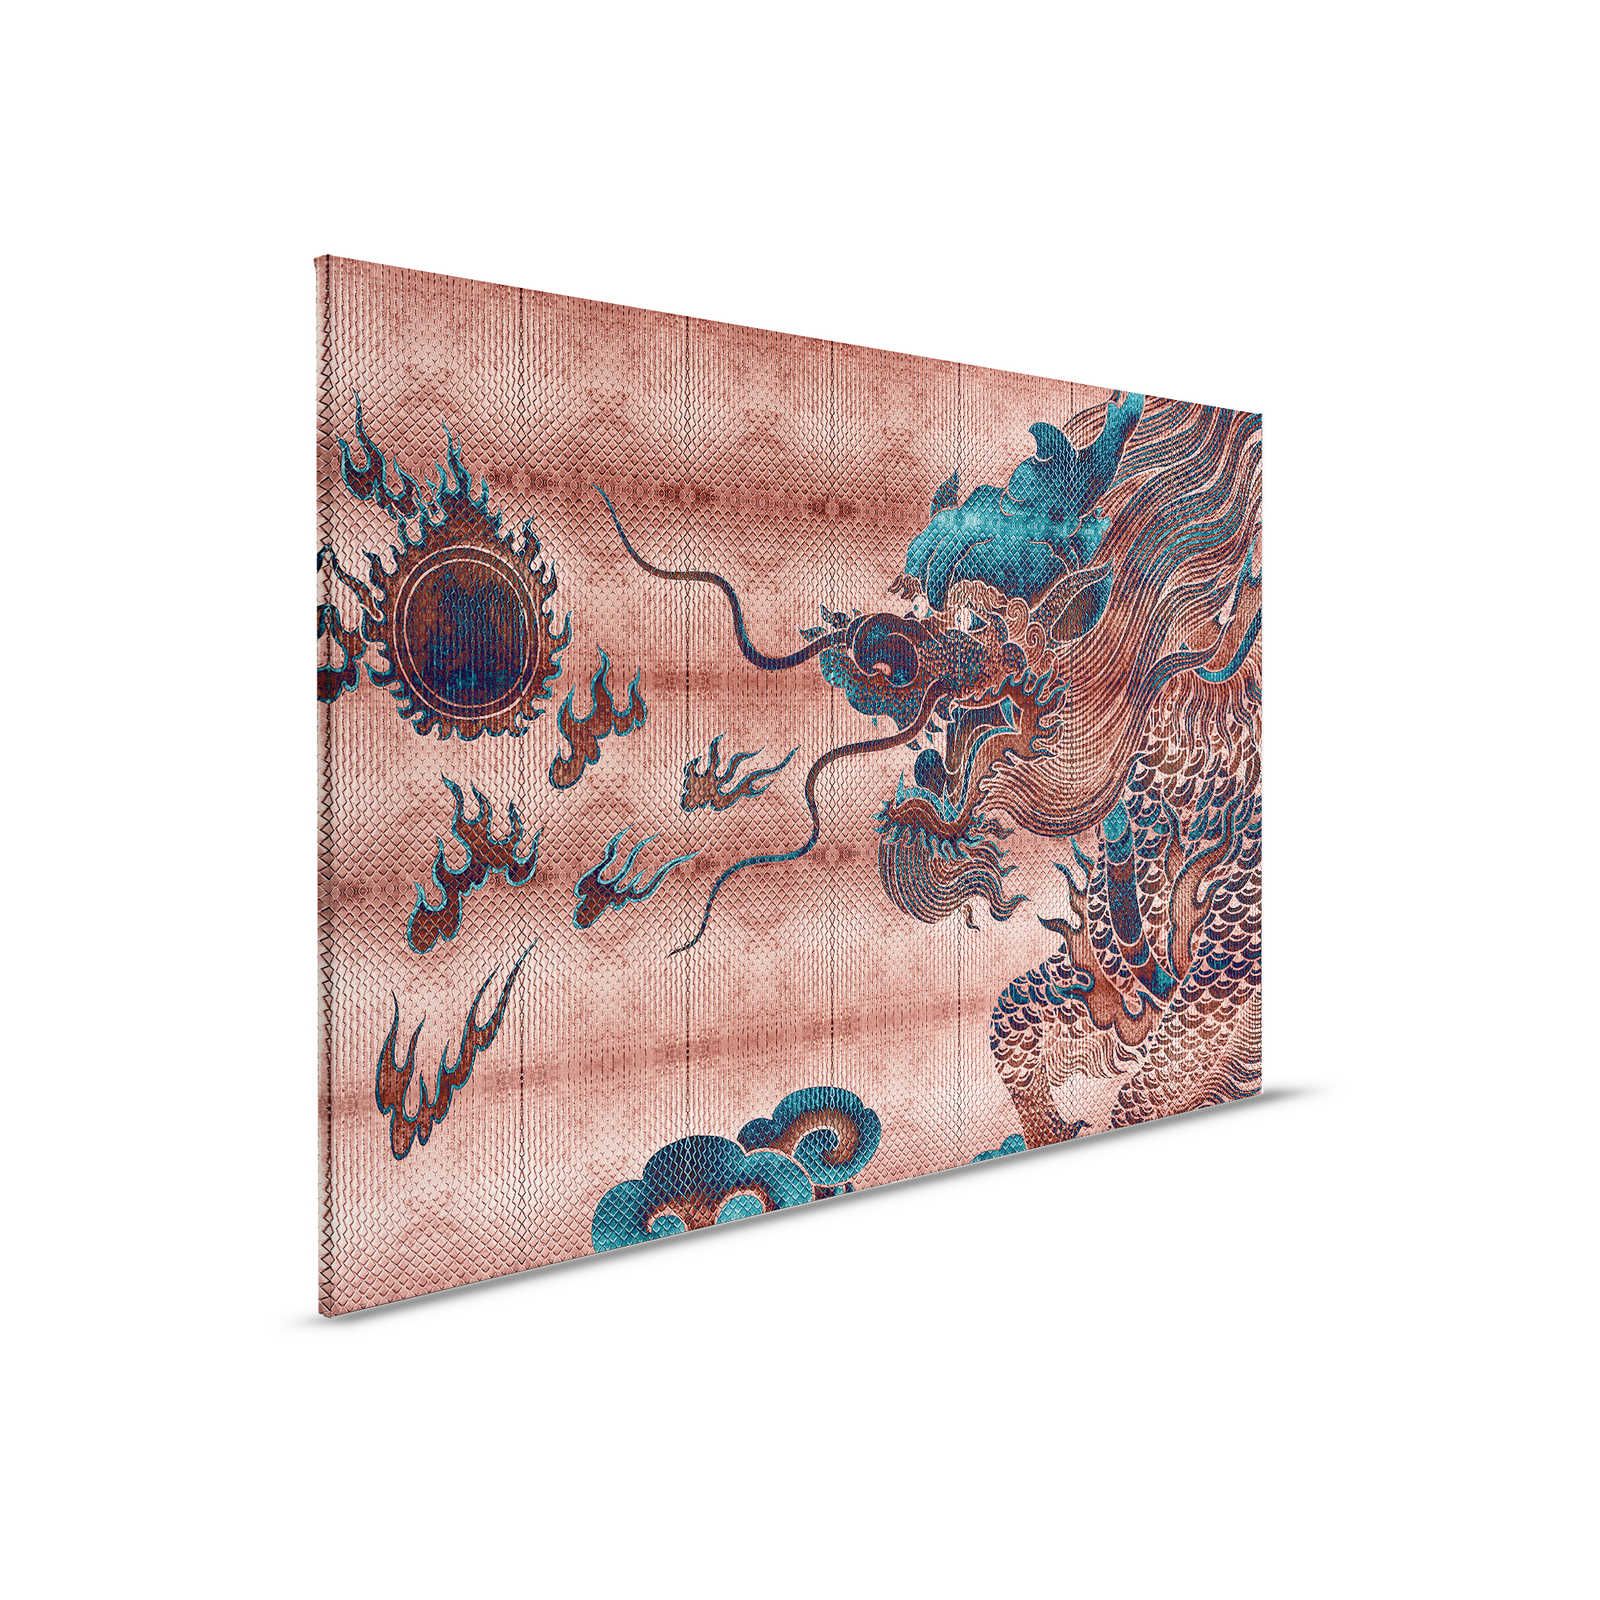 Shenzen 1 - Cuadro en lienzo Dragon Asian Syle con colores metálicos - 0,90 m x 0,60 m
